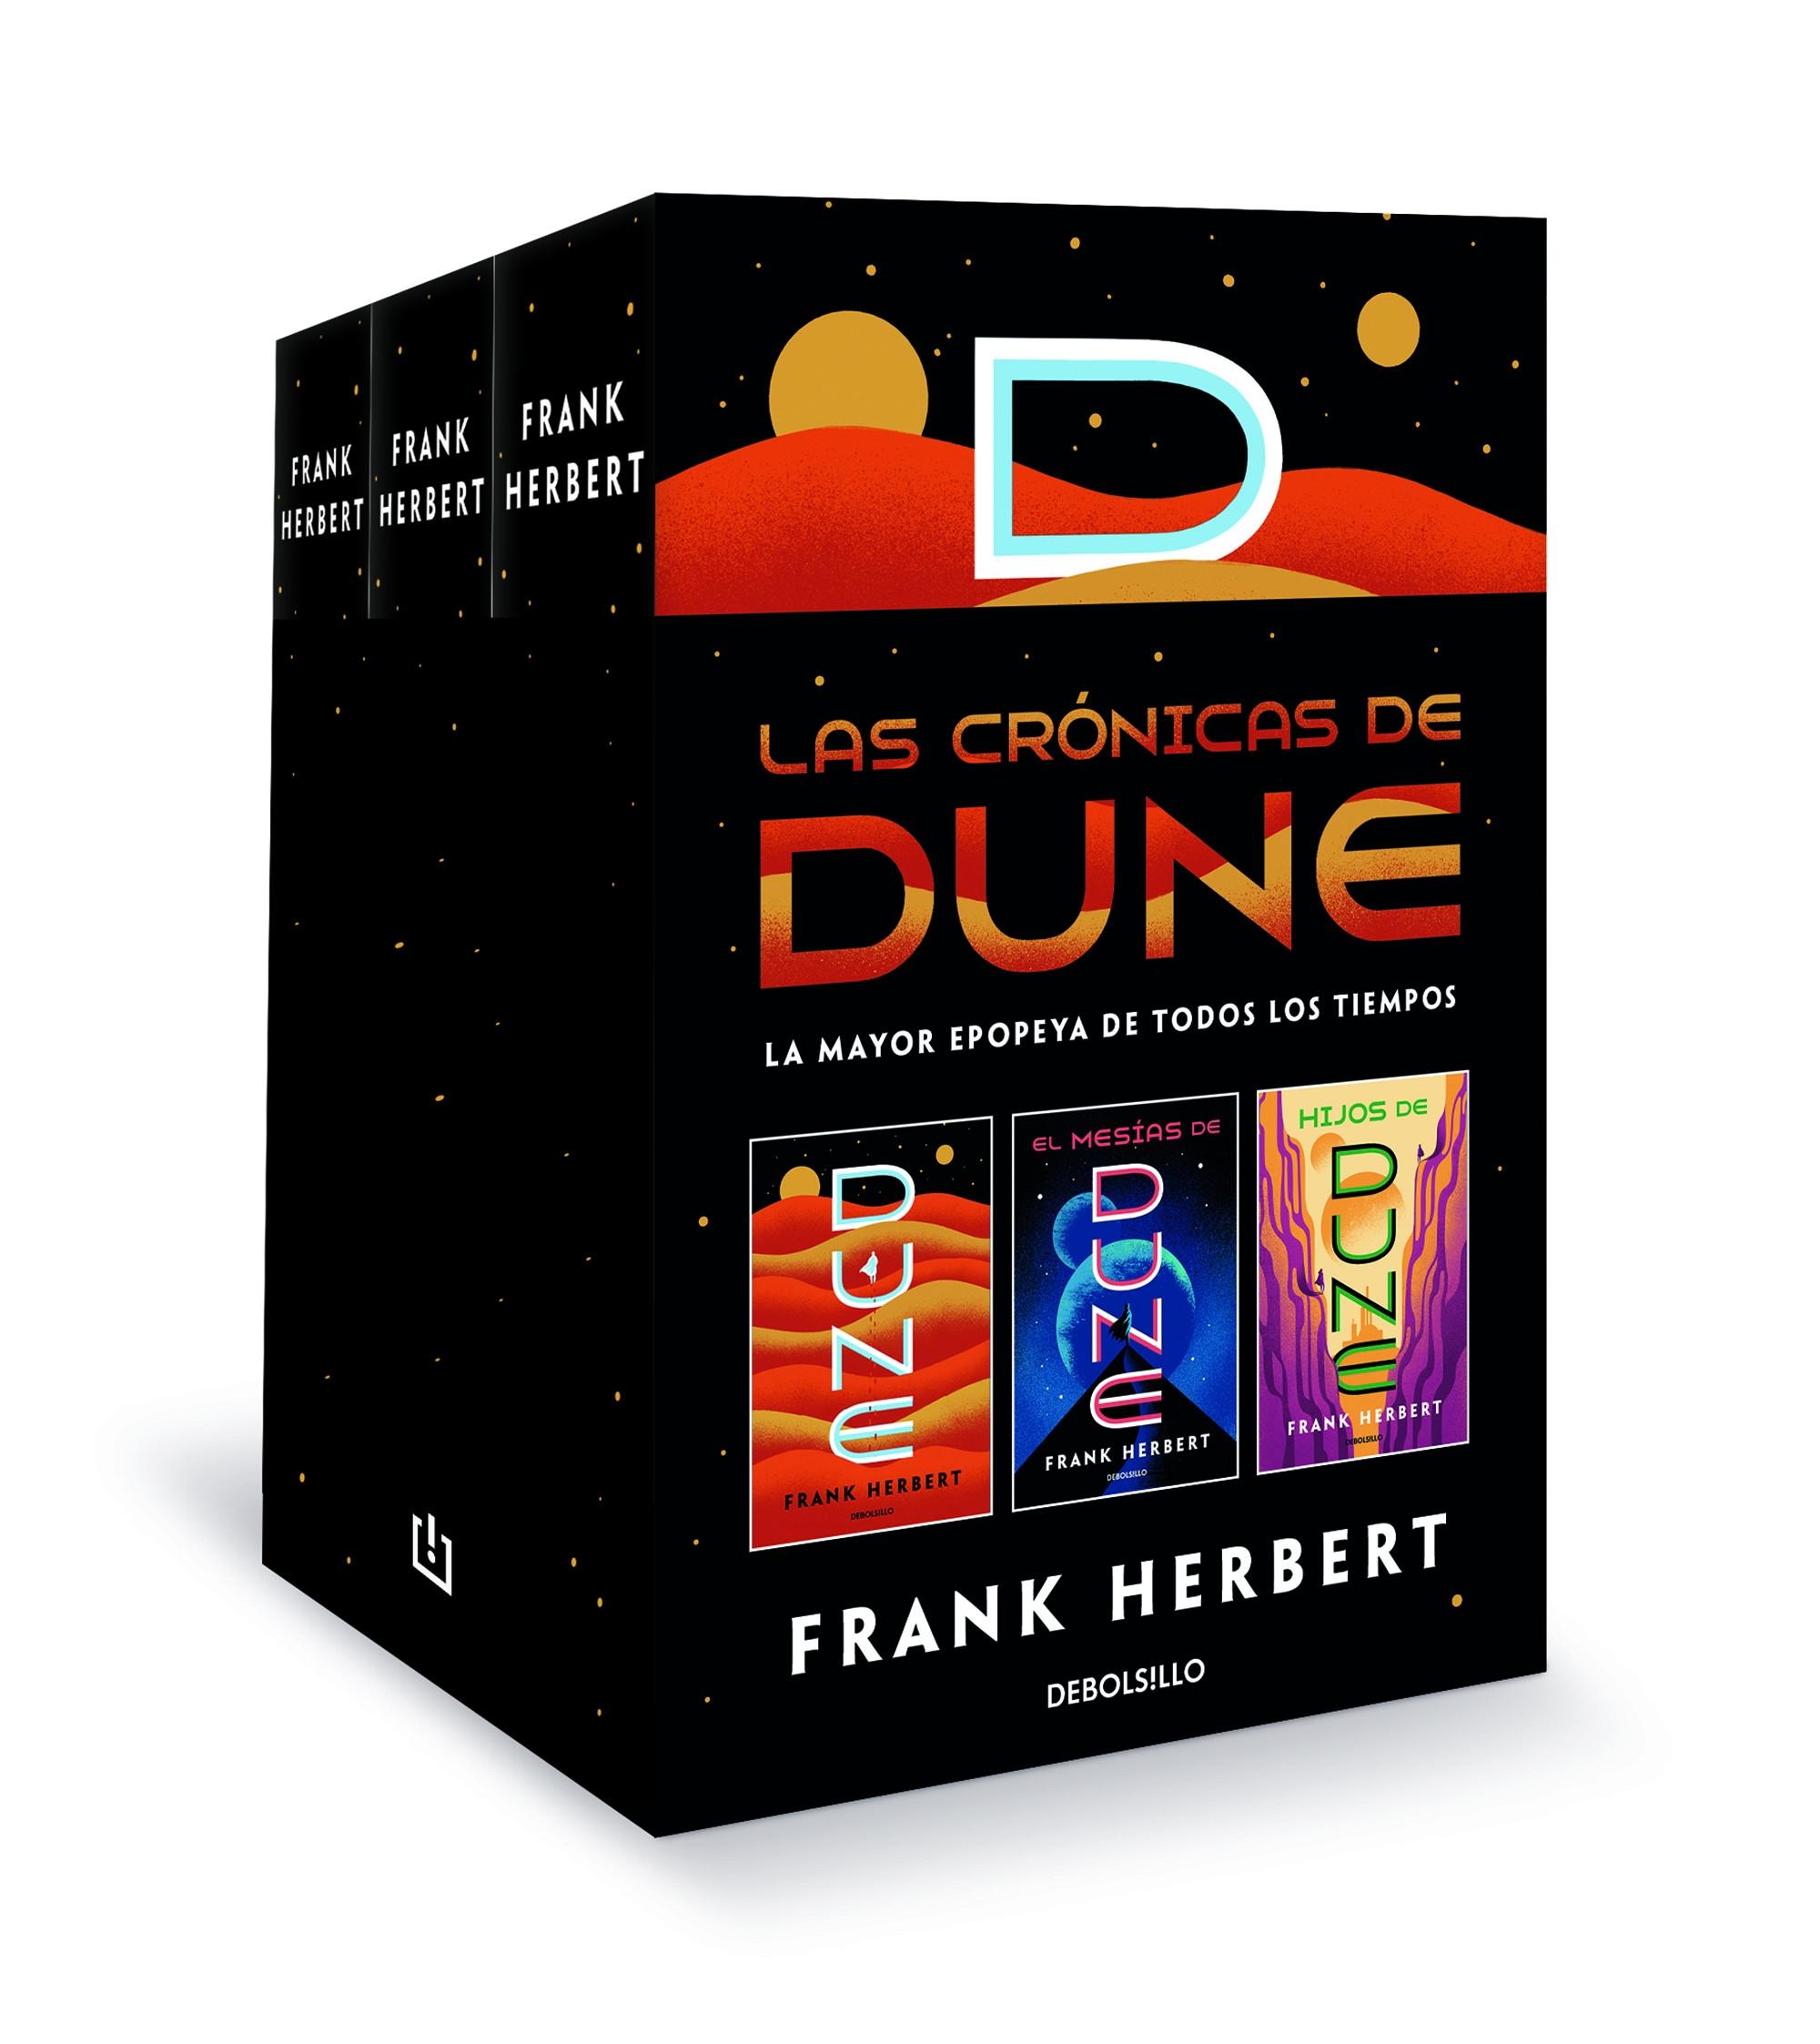 Las crónicas de Dune (Estuche 3 Vols.) "(Dune / El mesías de Dune / Hijos de Dune)"